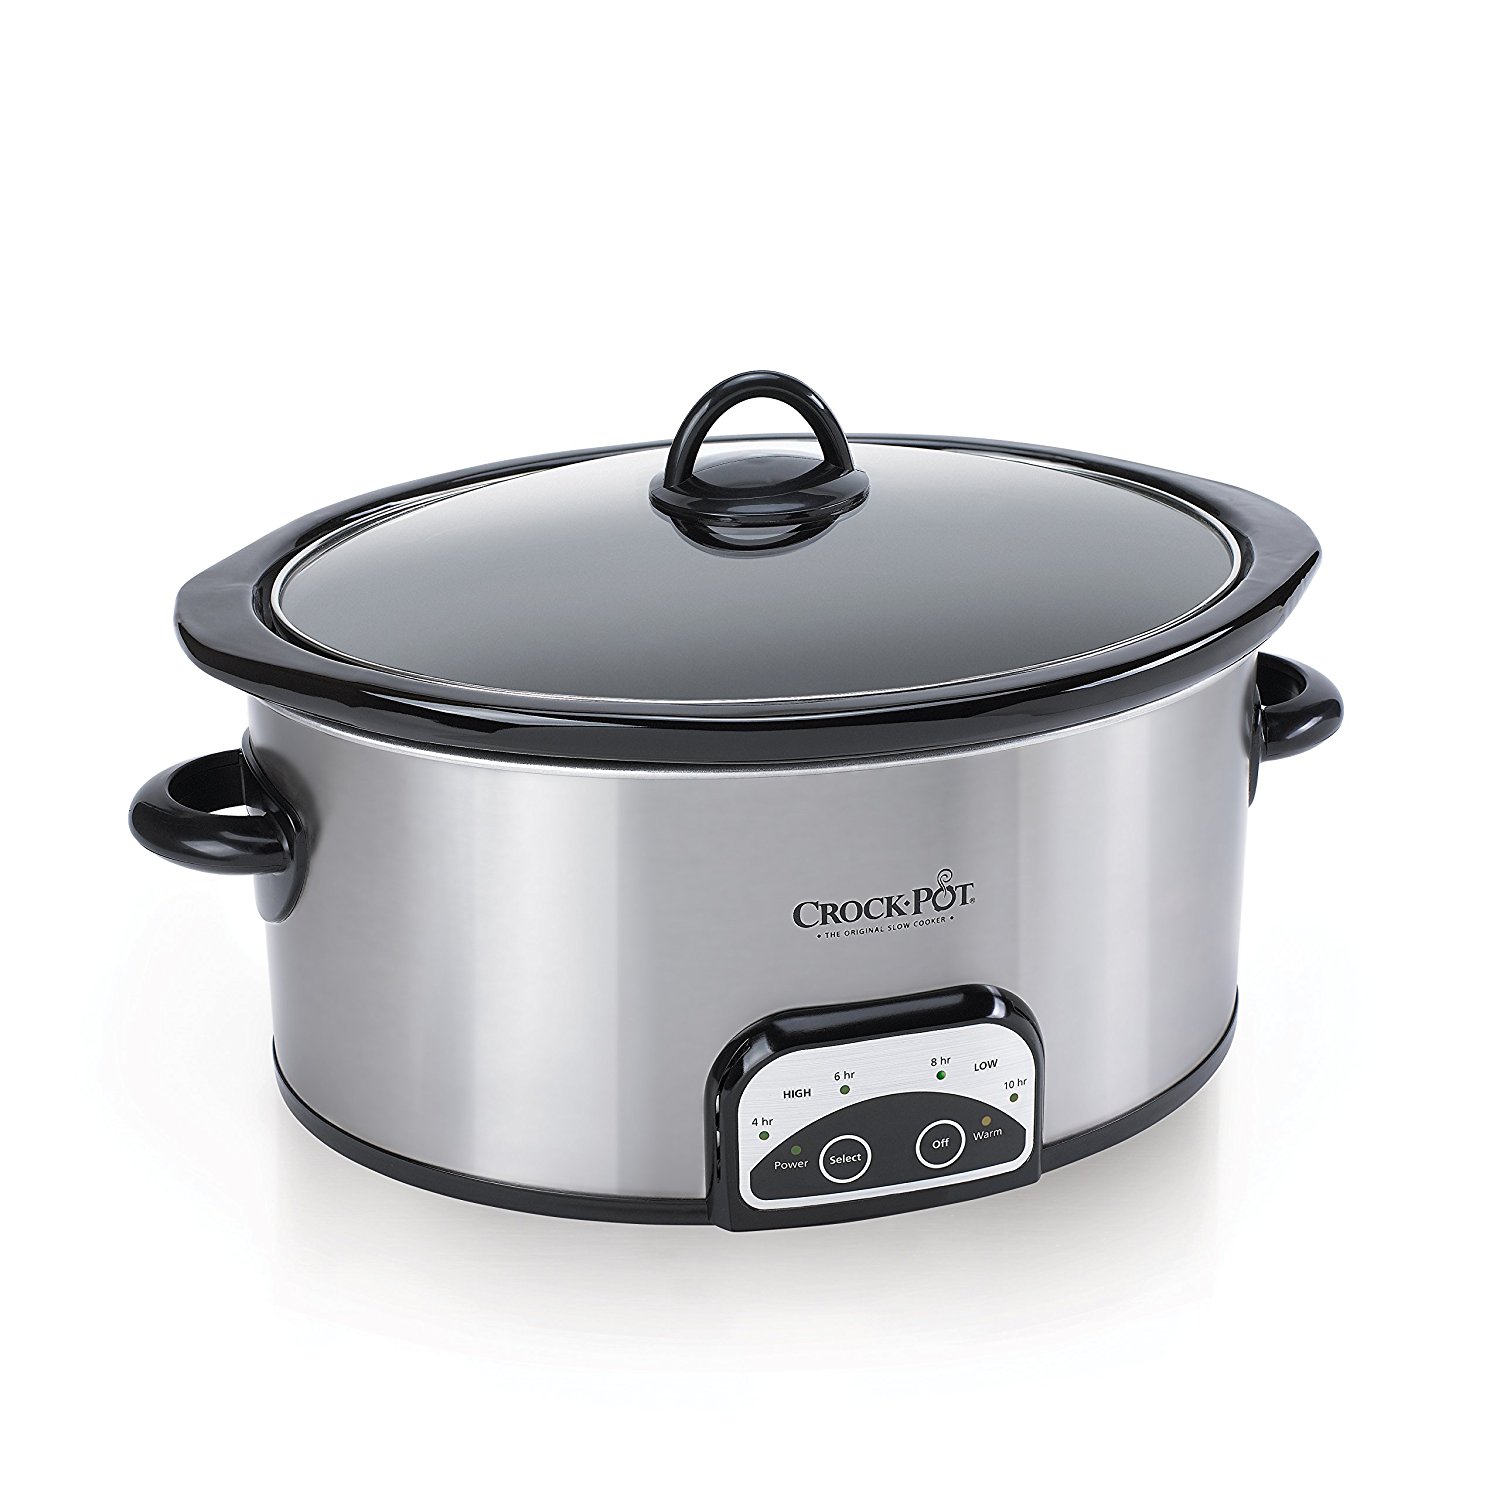 Crock-Pot 7-Quart Smart-Pot Slow Cooker Brushed Stainless Steel - image 1 of 3